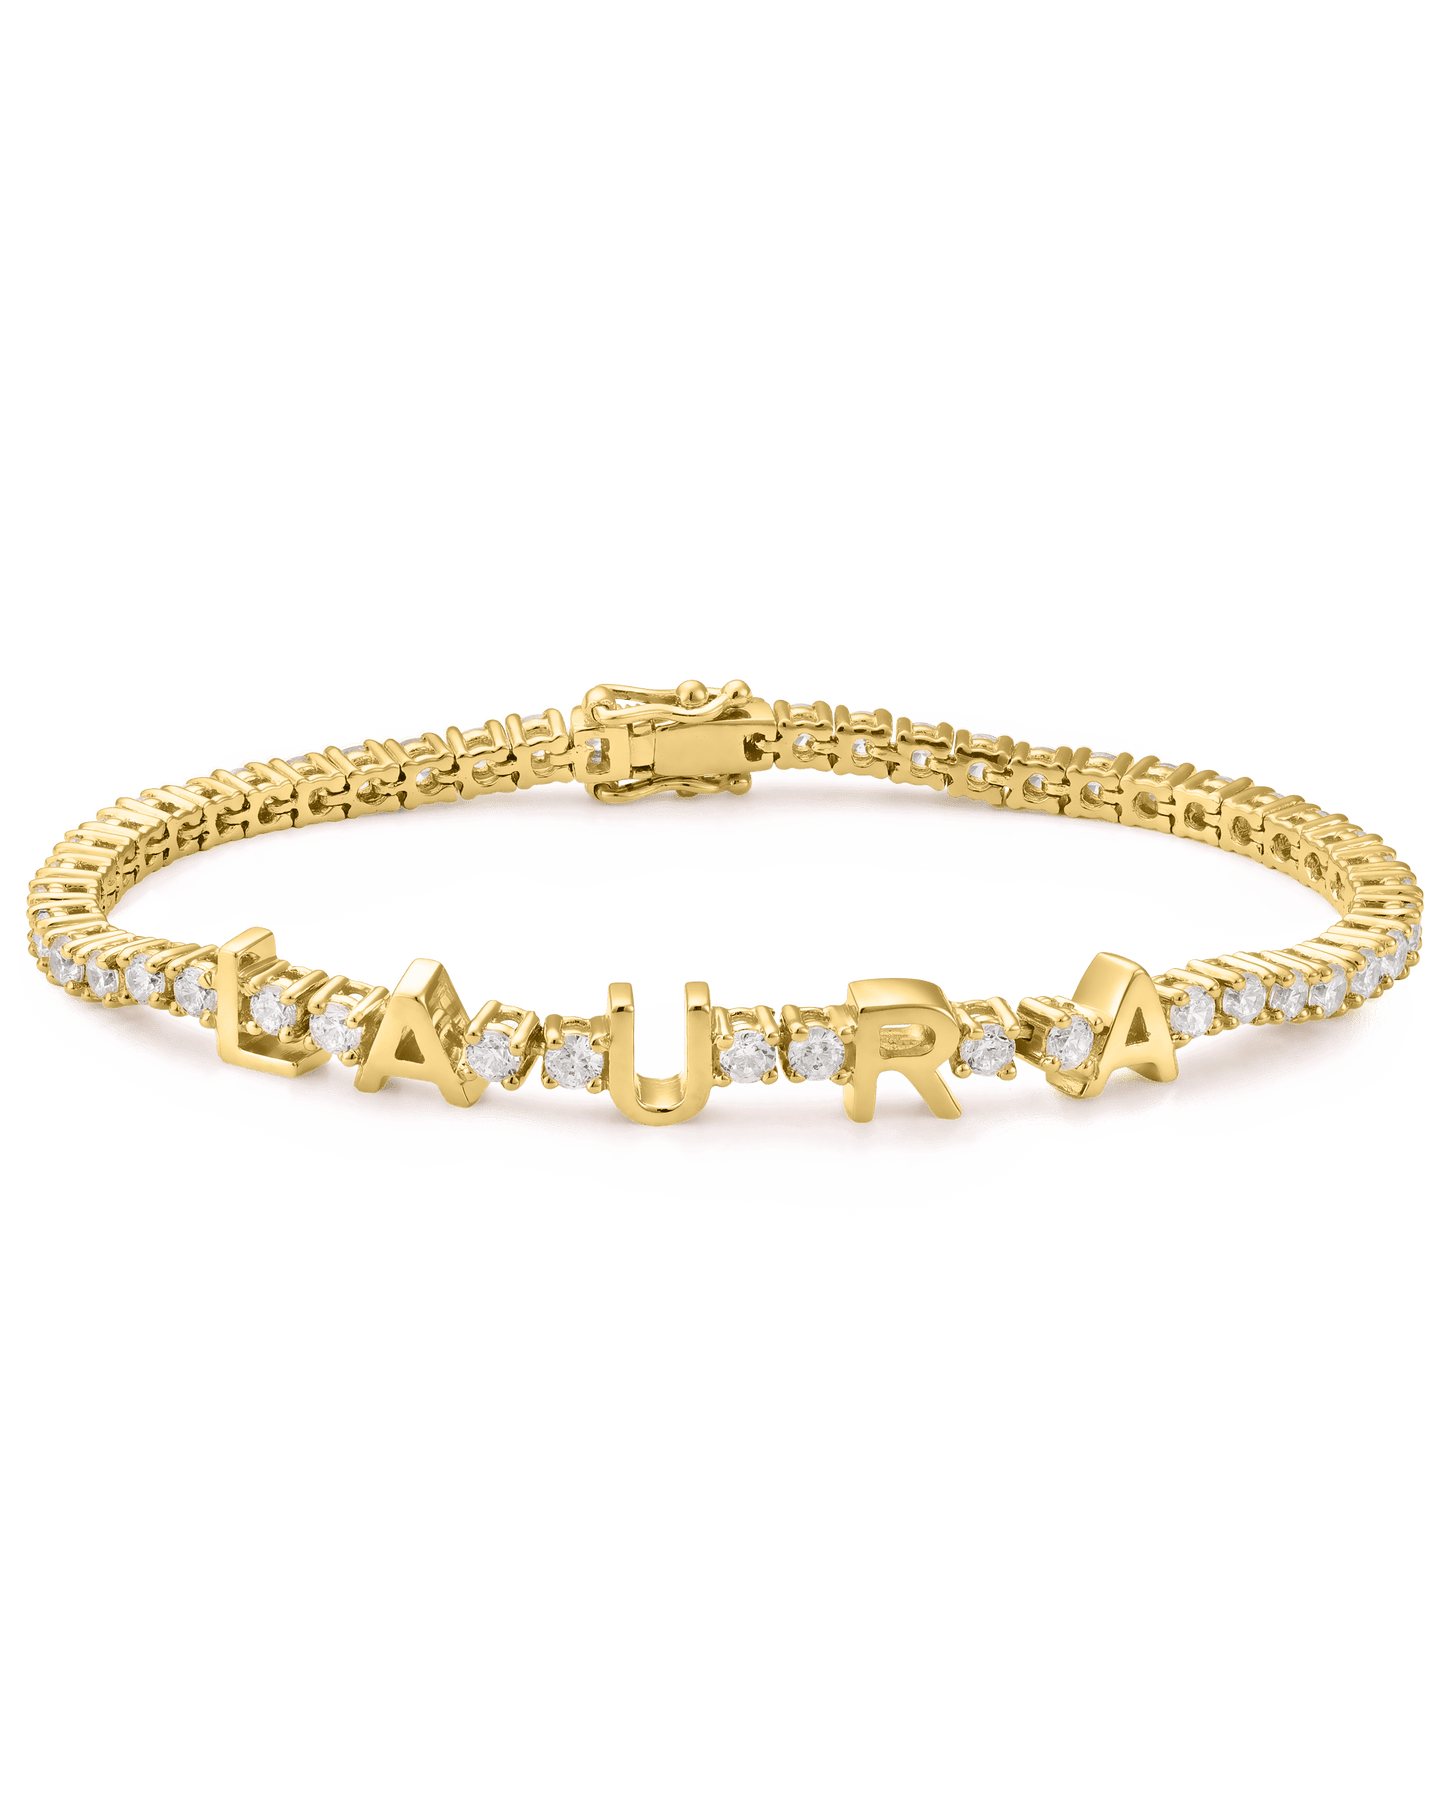 Evert Tennis Bracelet - 18K Gold Vermeil Bracelets magal-dev White 1 6"